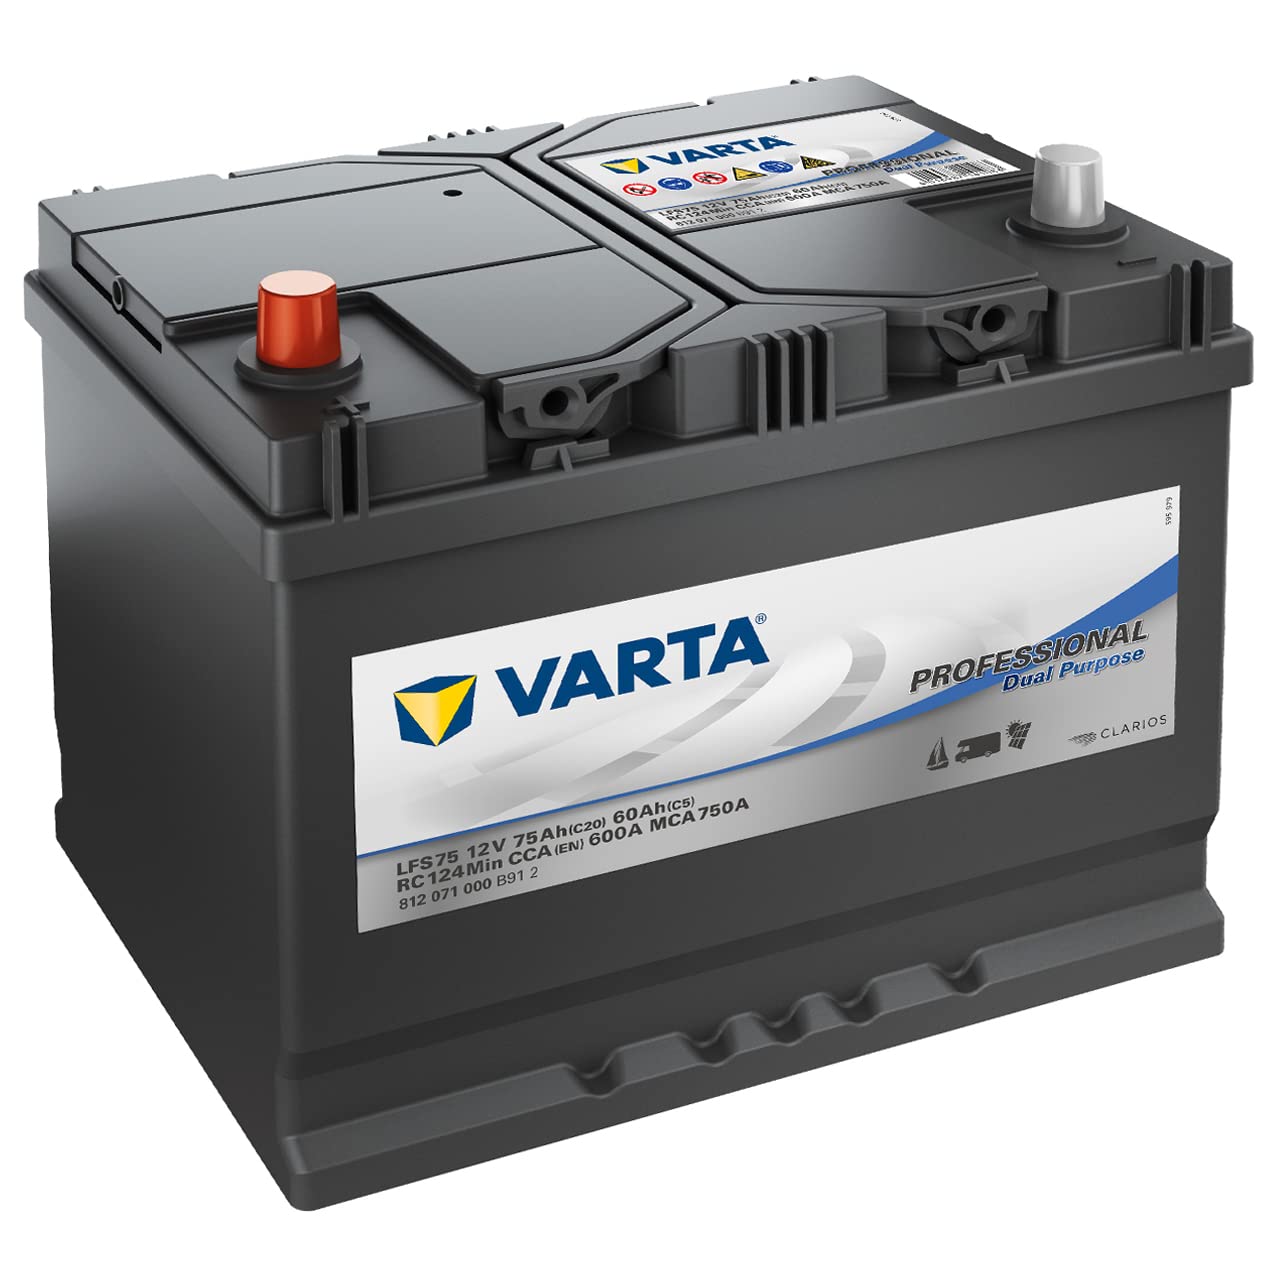 Varta 812071000B912 Starterbatterie in Spezial Transportverpackung und Auslaufschutz Stopfen (Preis inkl. EUR 7,50 Pfand) von Varta